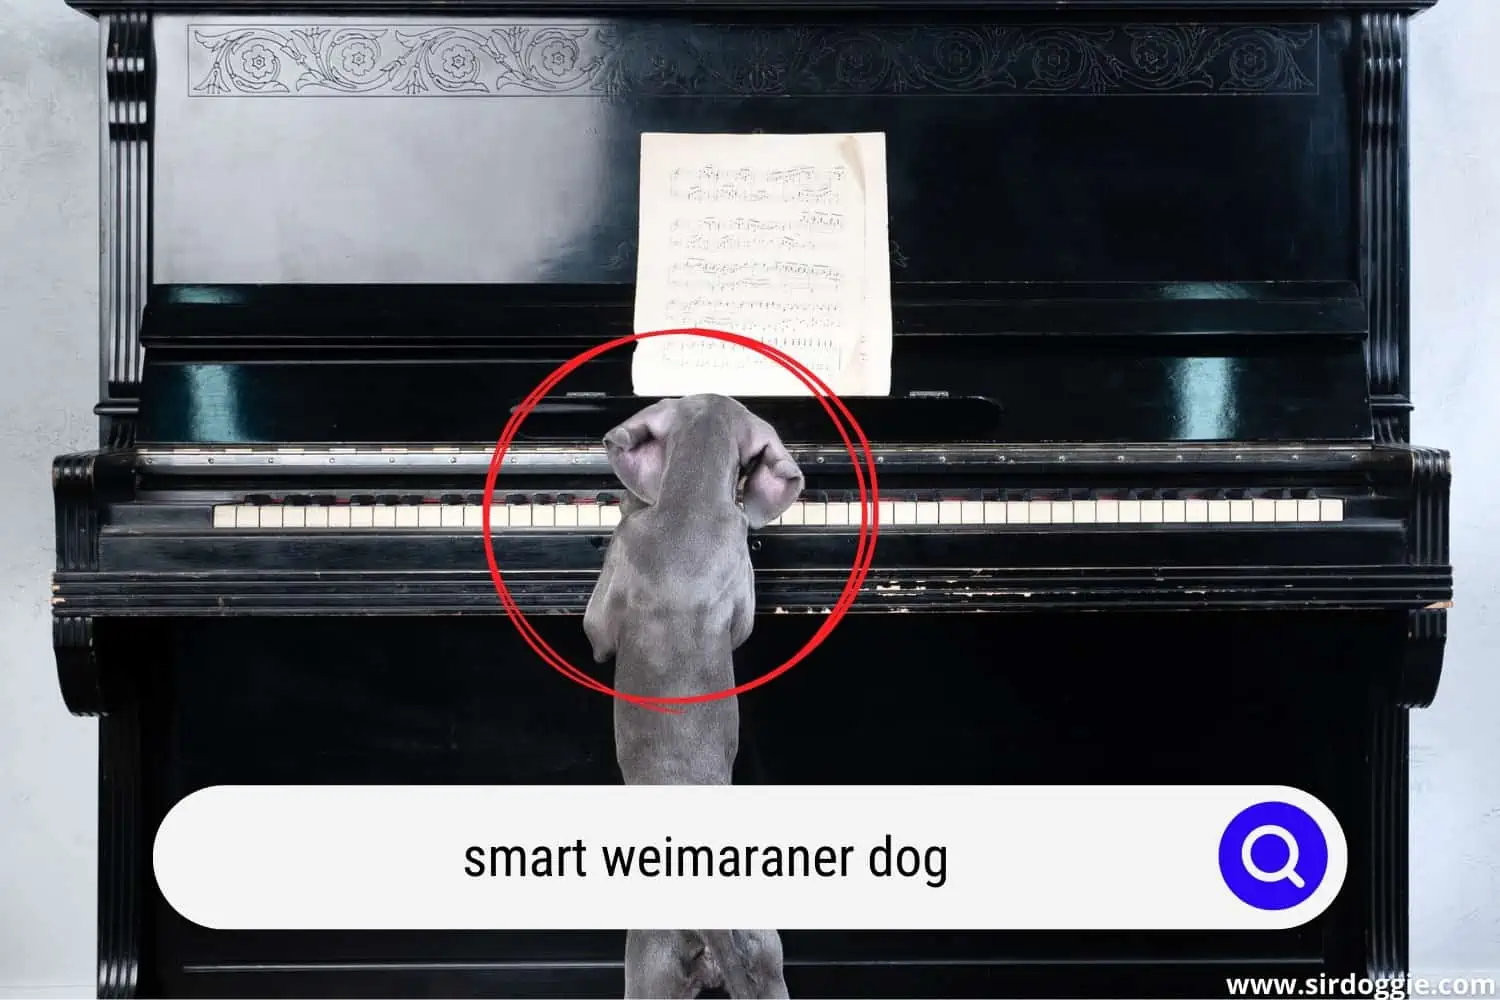 weimaraner dog playing piano